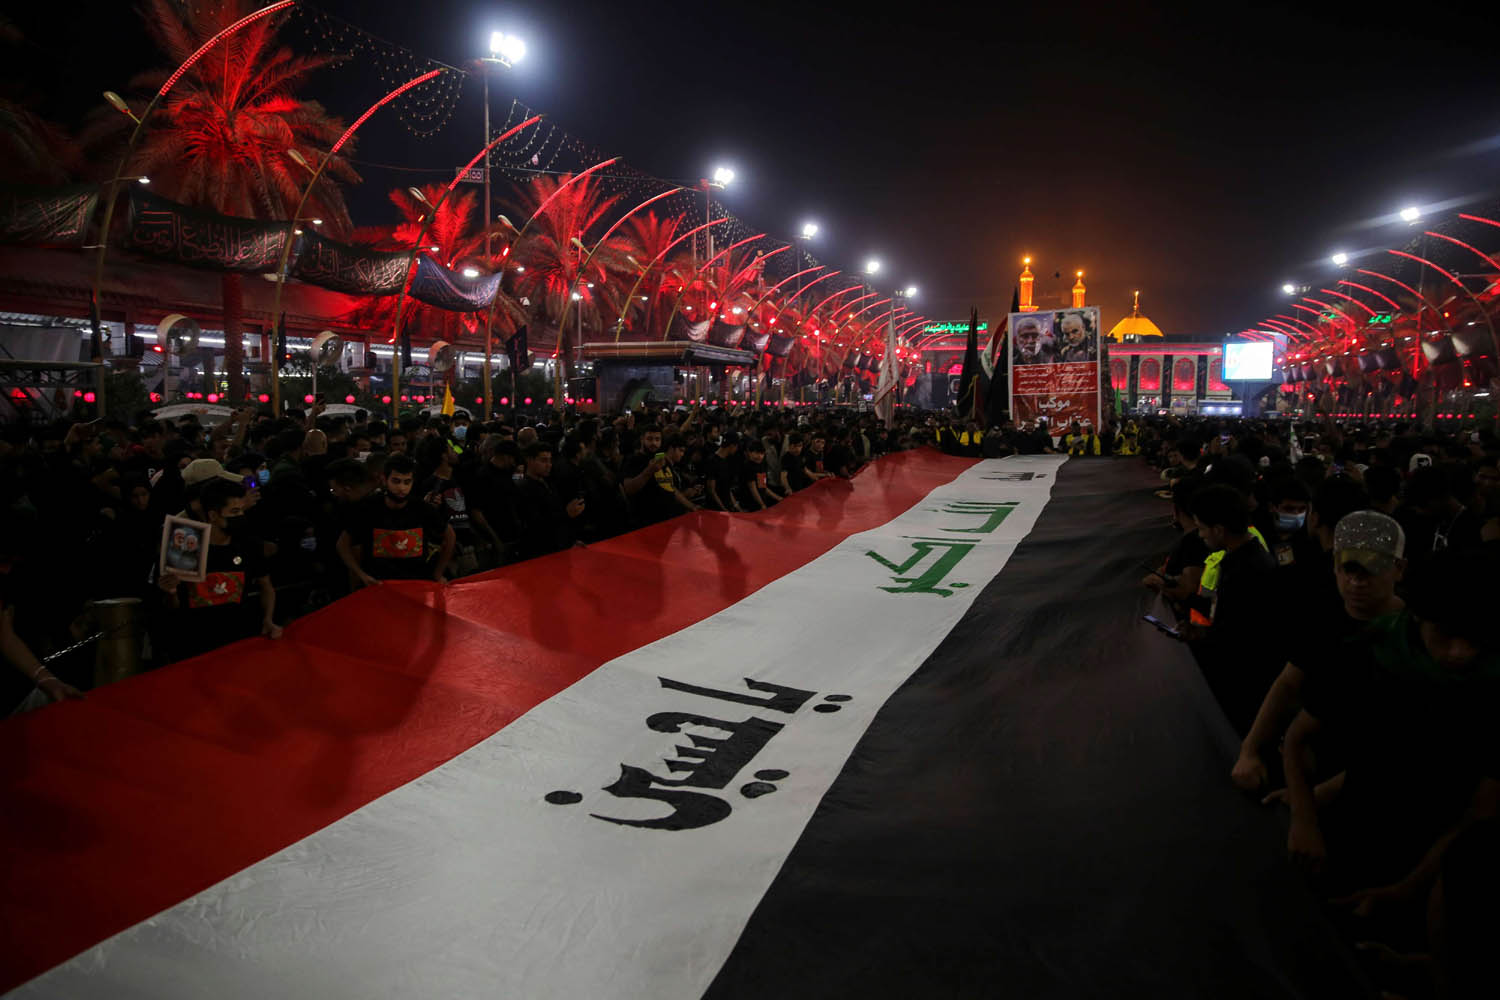 عراقيون يحتقلون بالاربعبنبة الحسين بتغيير العلم العراقي